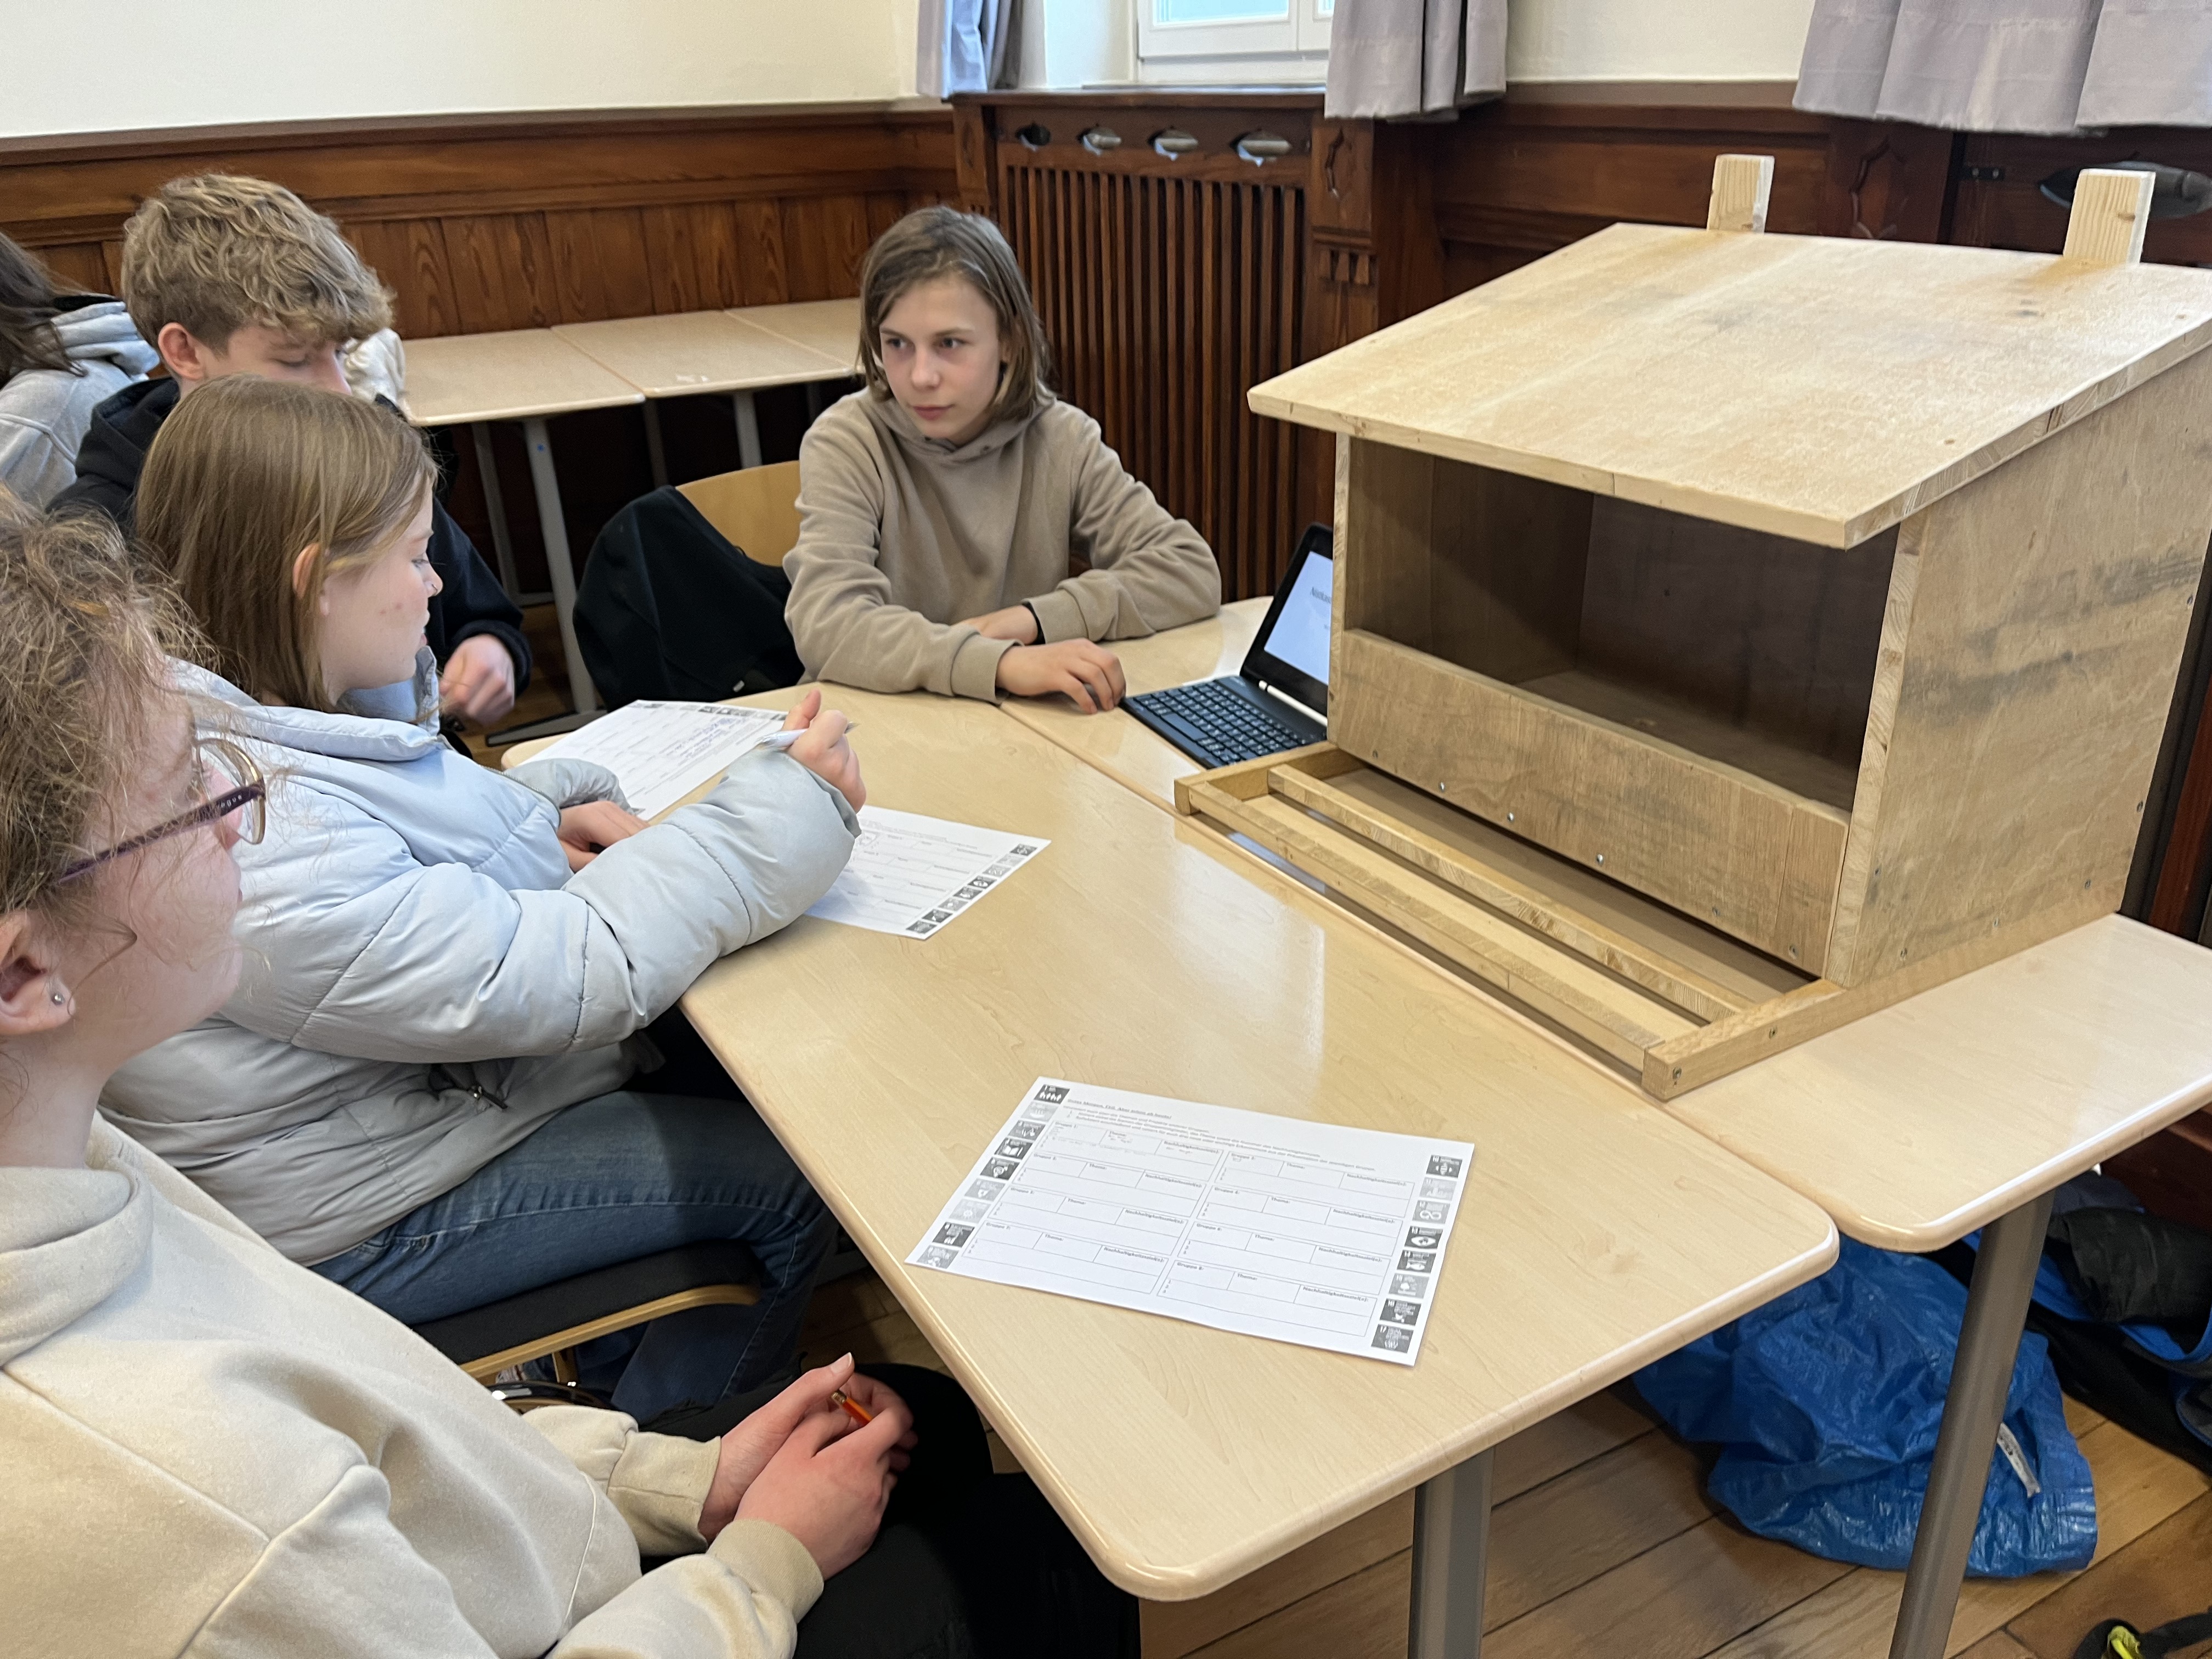 Zu sehen ist der selbstgebaute Nistkasten für Turmfalken aus Holz in einer Größe von etwa 60x60x70cm (BLH) mit seinem Erbauer Jona Teutenberg, der mit Hilfe eine Tablets und einer PowerpointPräsentation einen Vortrag vor 3 SchülerInnen an einem Tisch hält